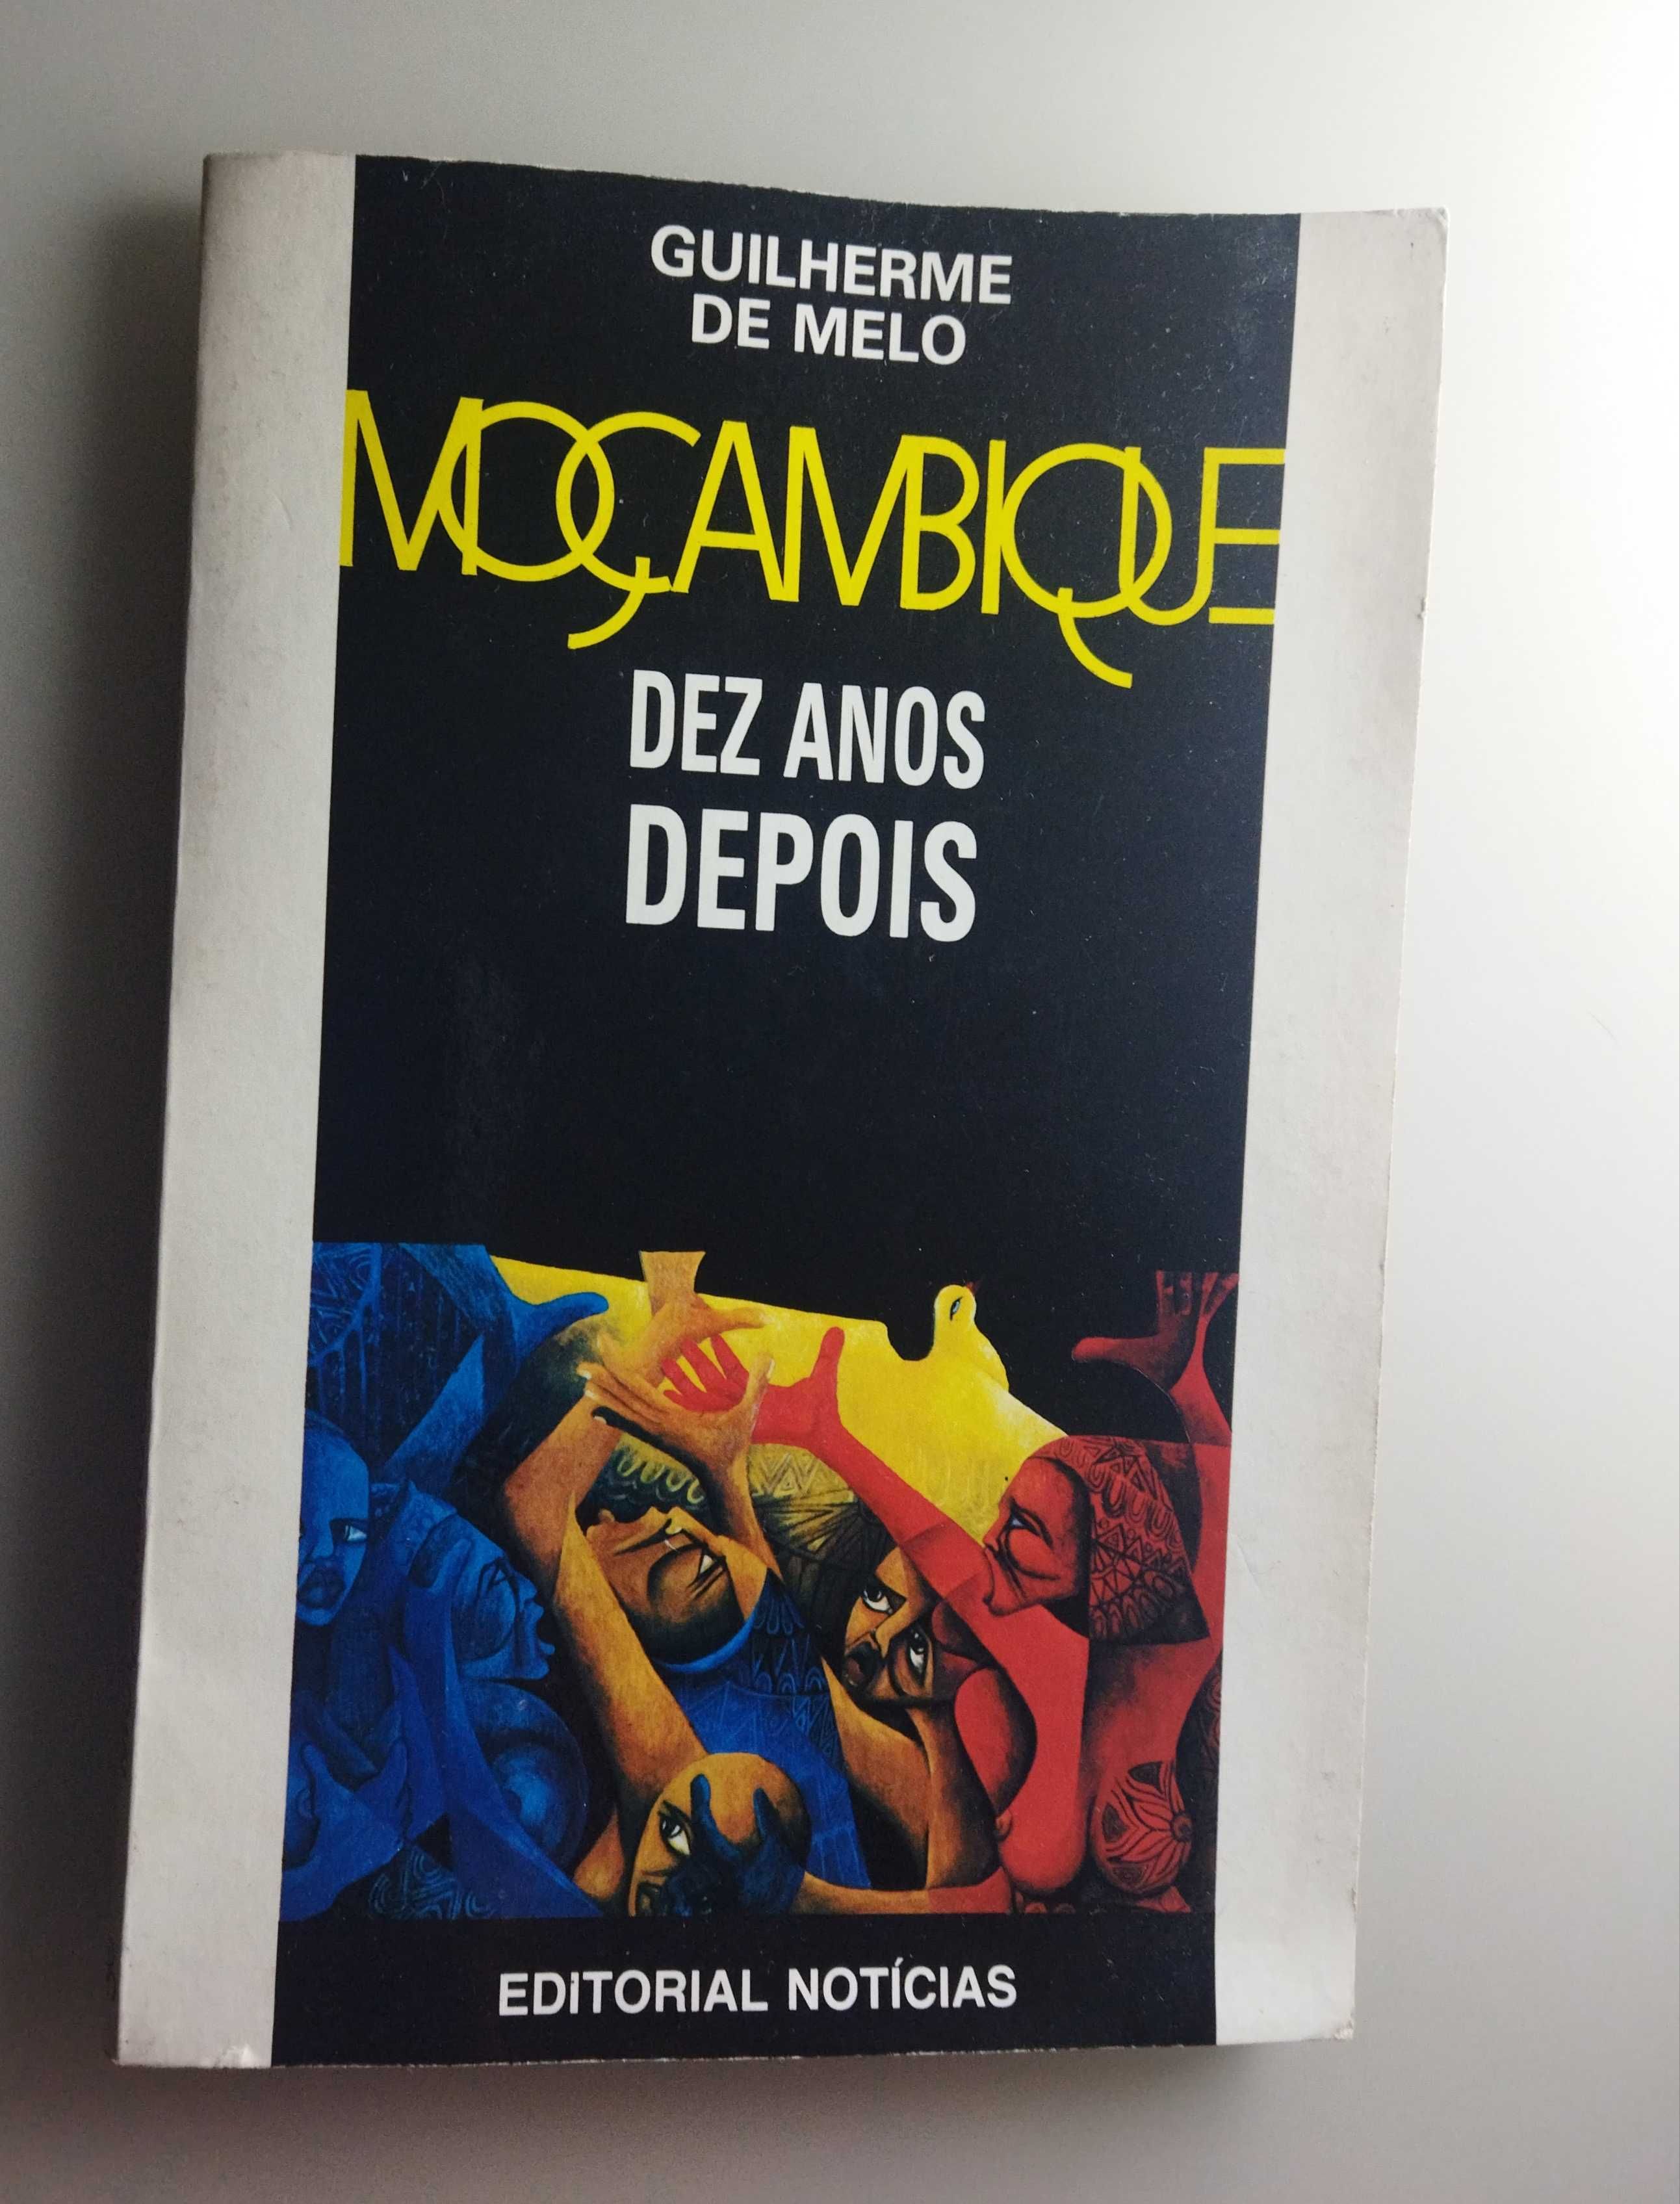 Guilherme de Melo. Moçambique dez anos Depois - Editorial Notícias